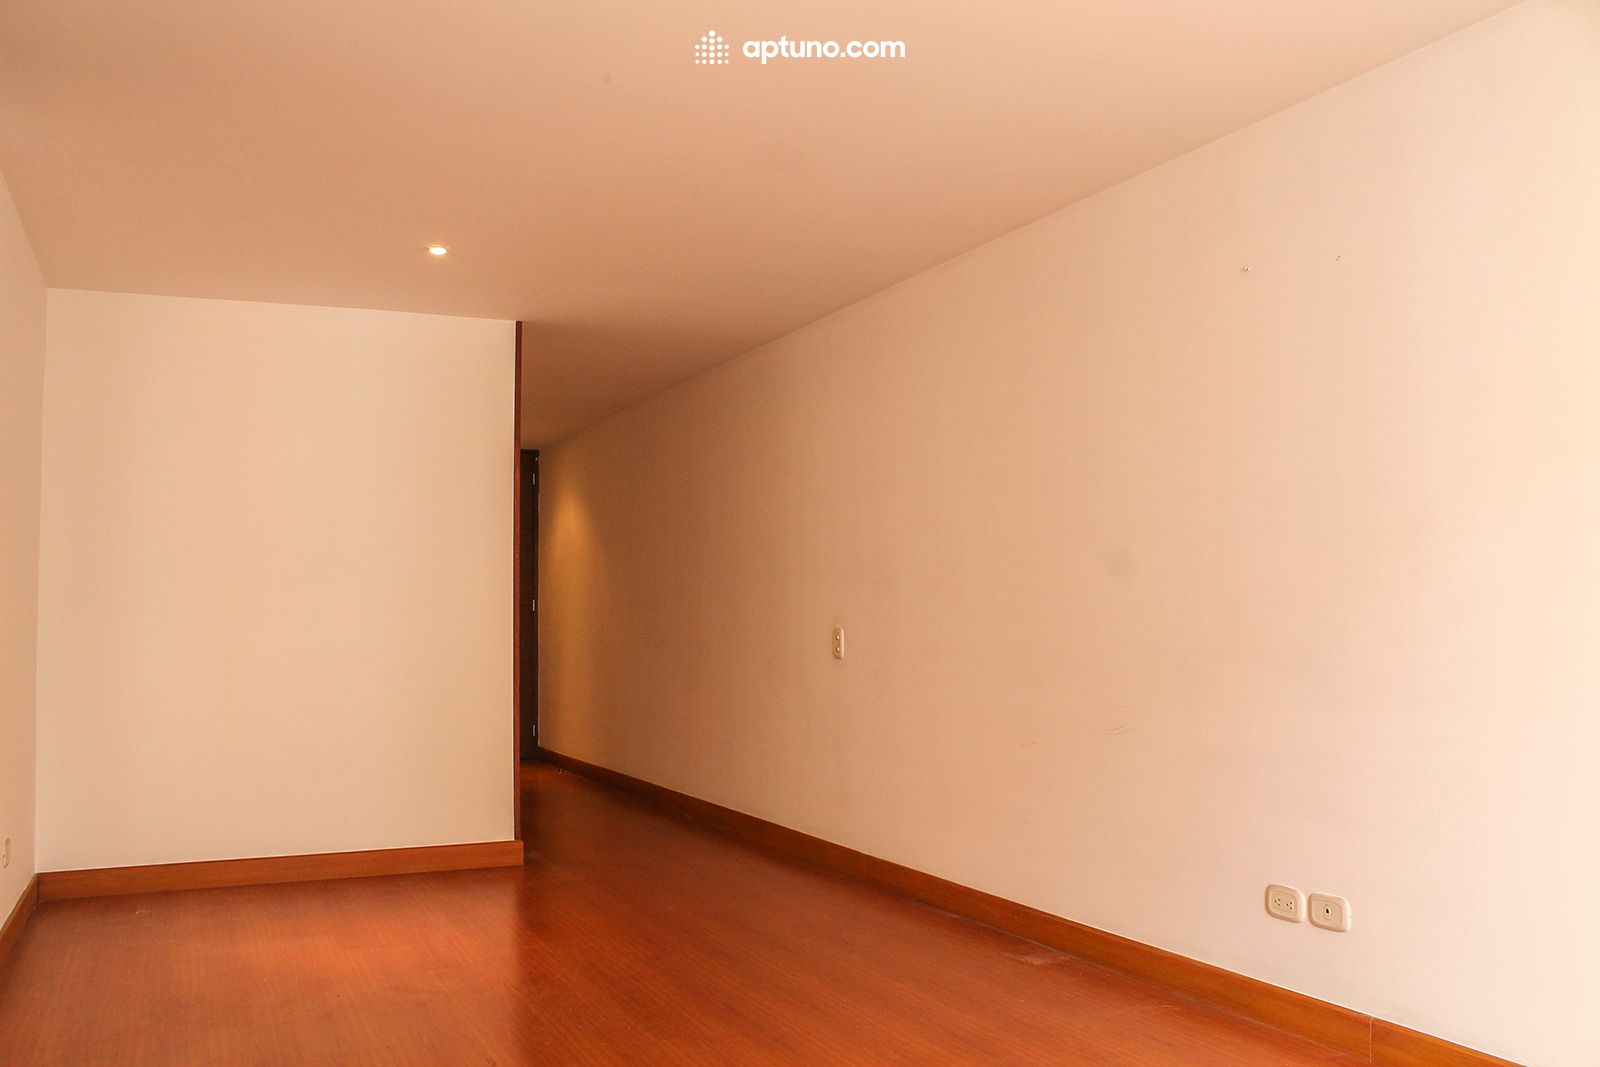 Apartamento en arriendo Santa Teresa 90 m² - $ 1.917.000,00